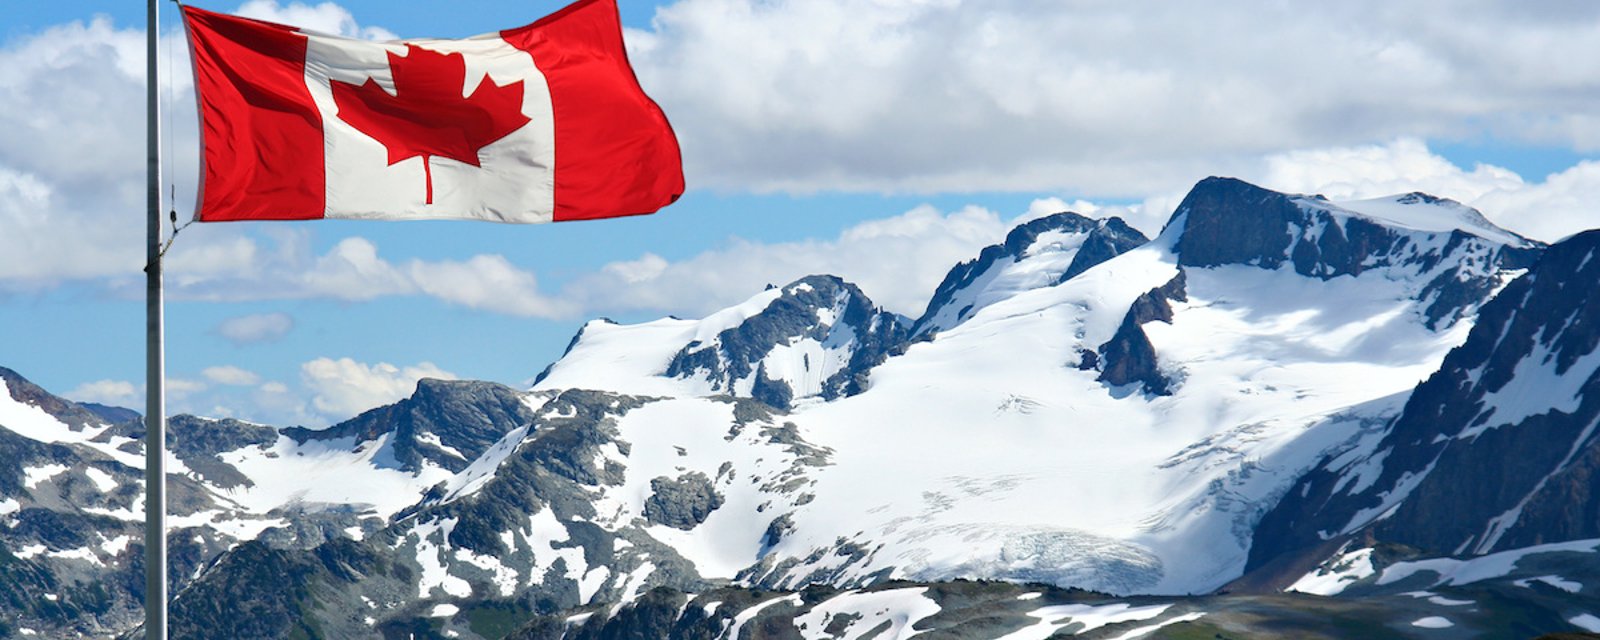 Le Canada est dans le top 10 des pays les plus pacifiques au monde